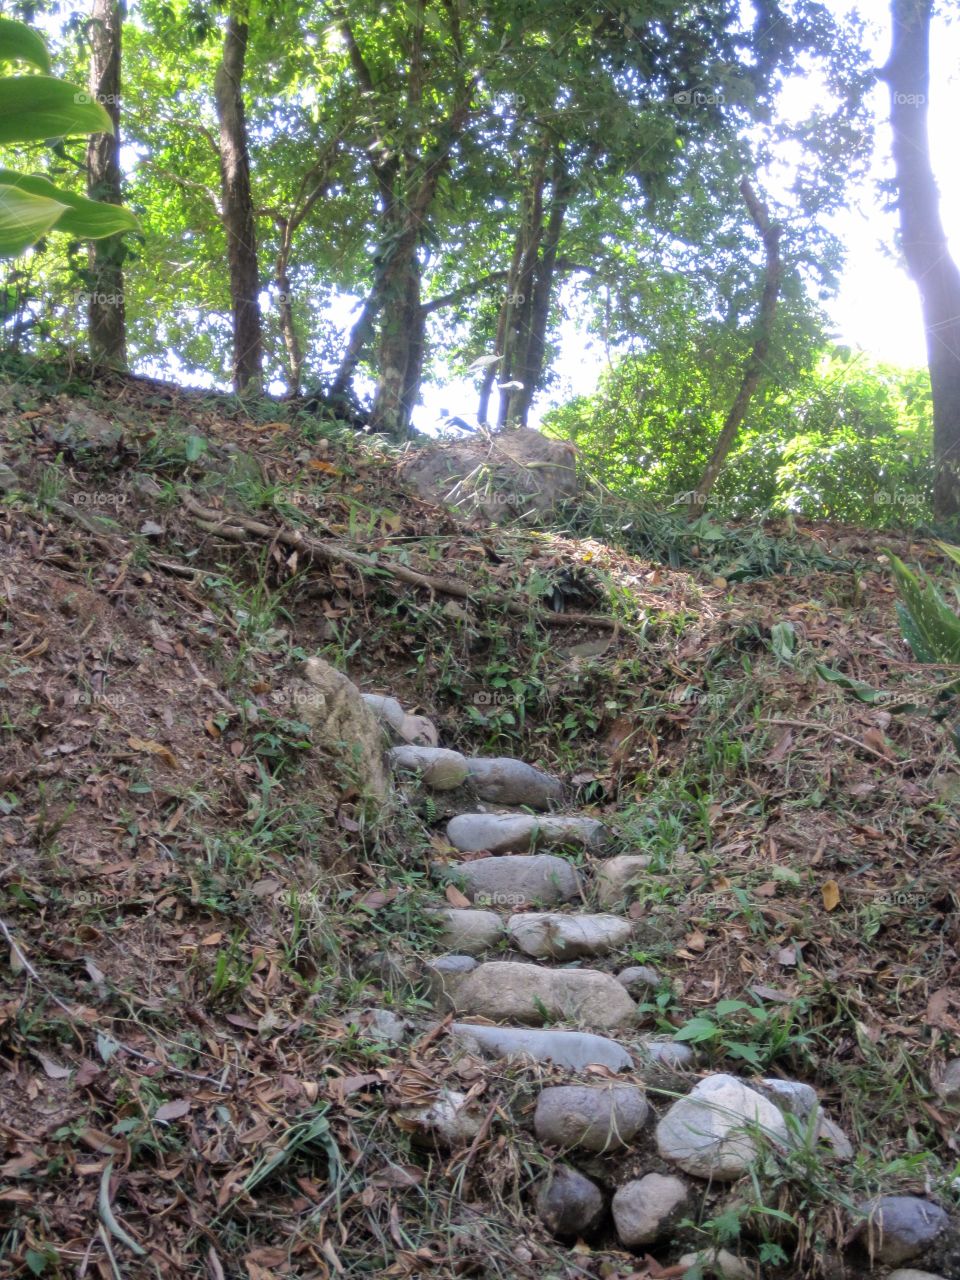 Stone Stairs